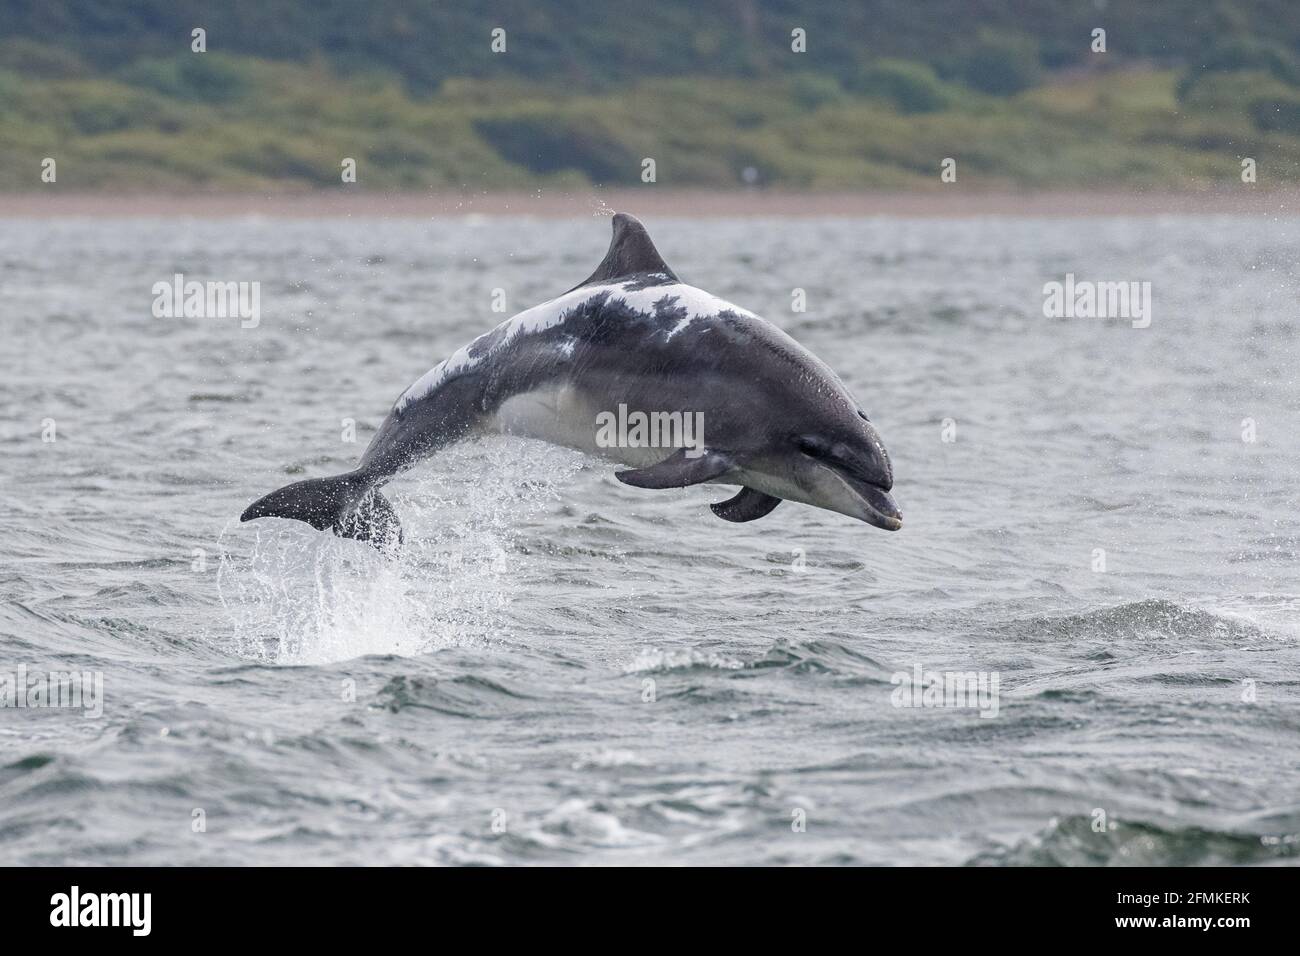 Diese schönen Kreaturen sind etwa 12 Fuß lang. INVERNESS, SCHOTTLAND: ATEMBERAUBENDE Bilder haben zwei große Delfine beim Flippen festgehalten Stockfoto